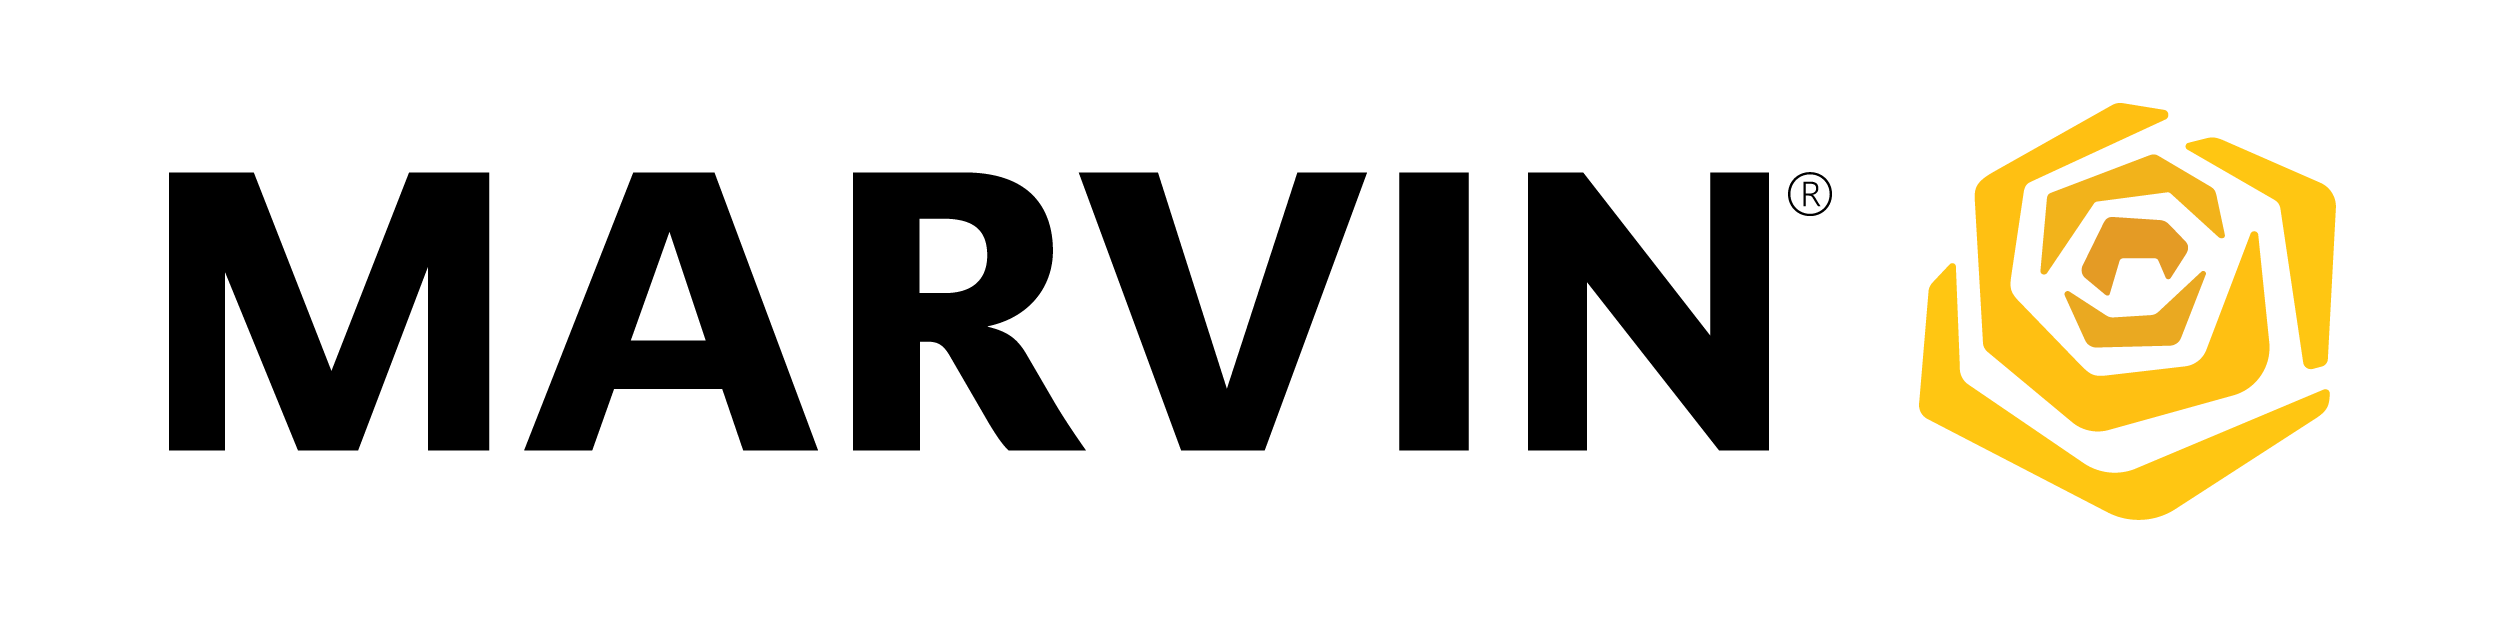 marvin-logo-600.png